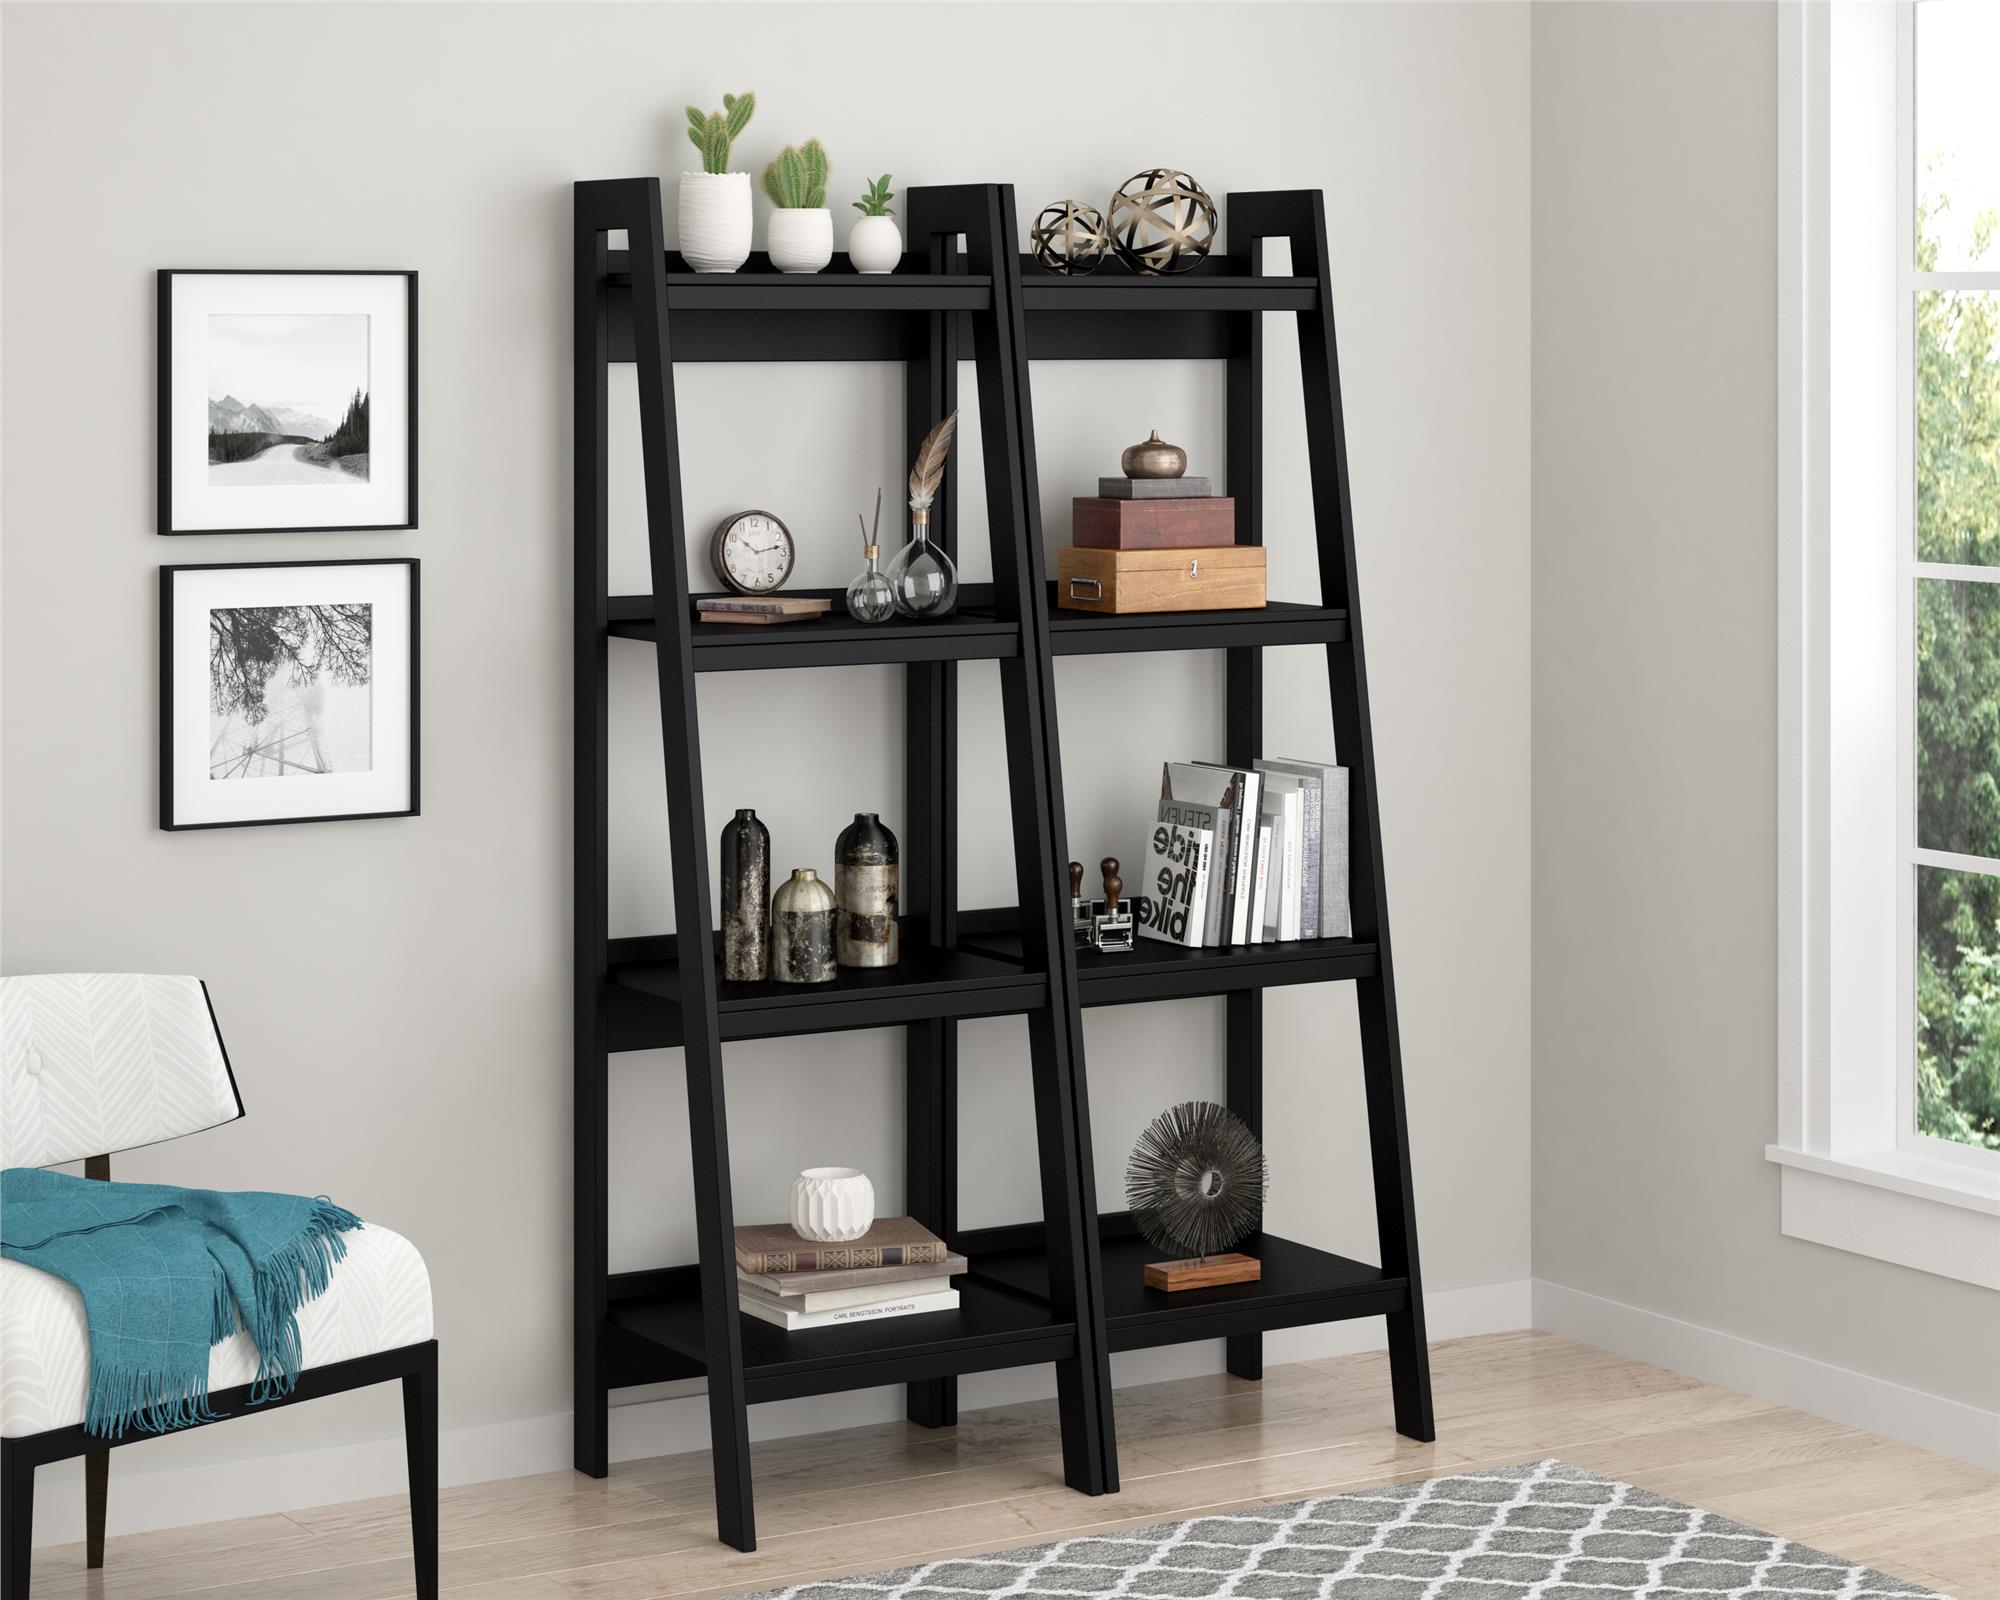 Ameriwood Home Hayes 4 Shelf Ladder Bookcase Bundle, Black - image 1 of 9